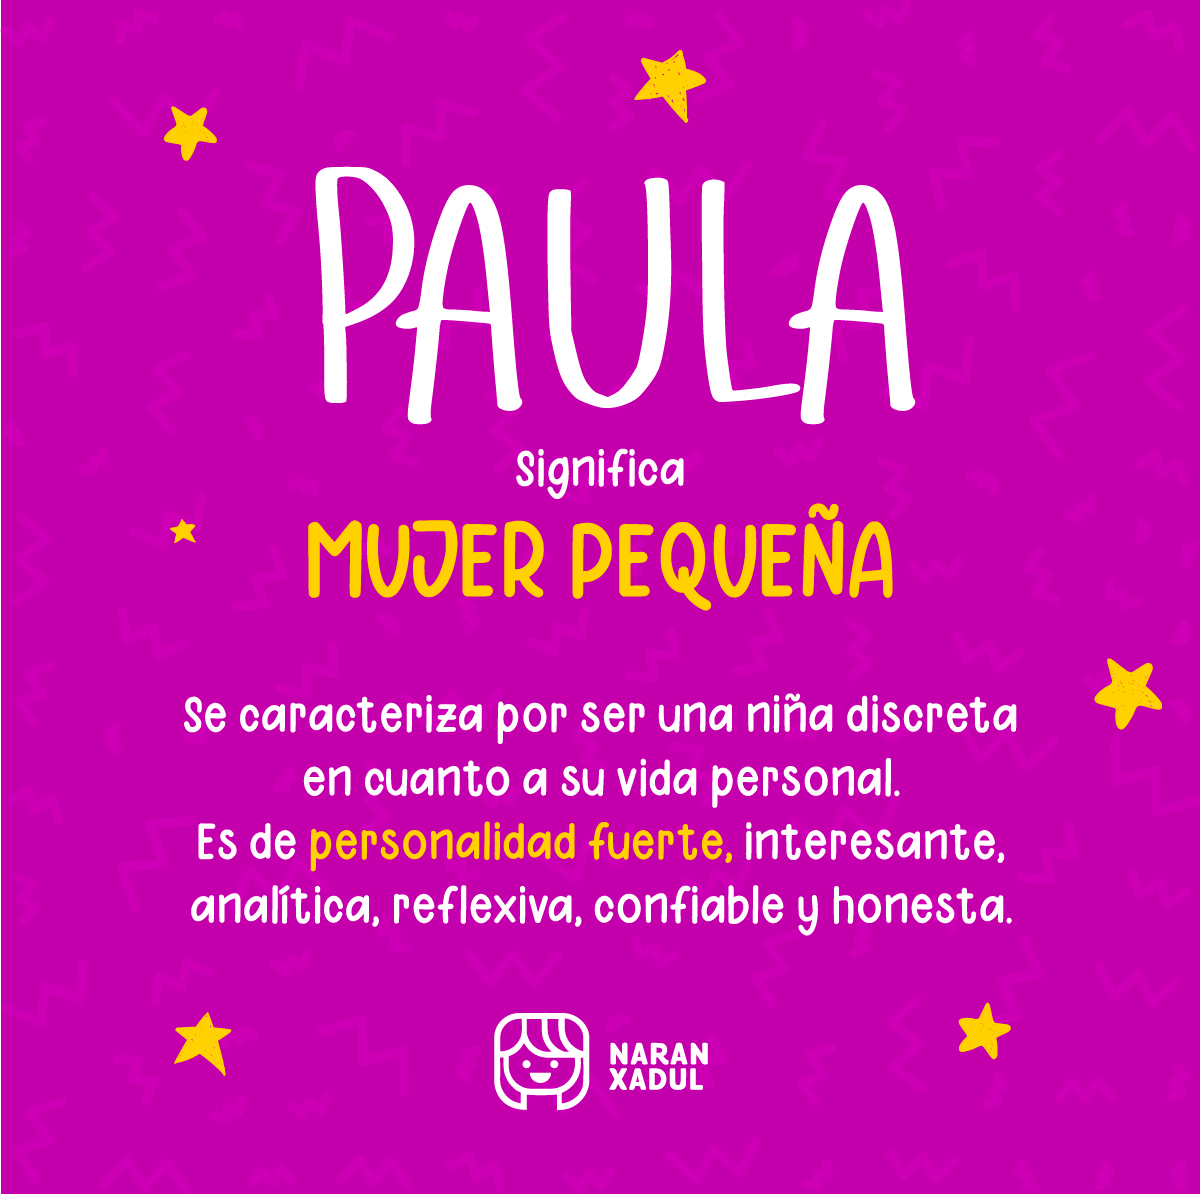 Significado de Paula